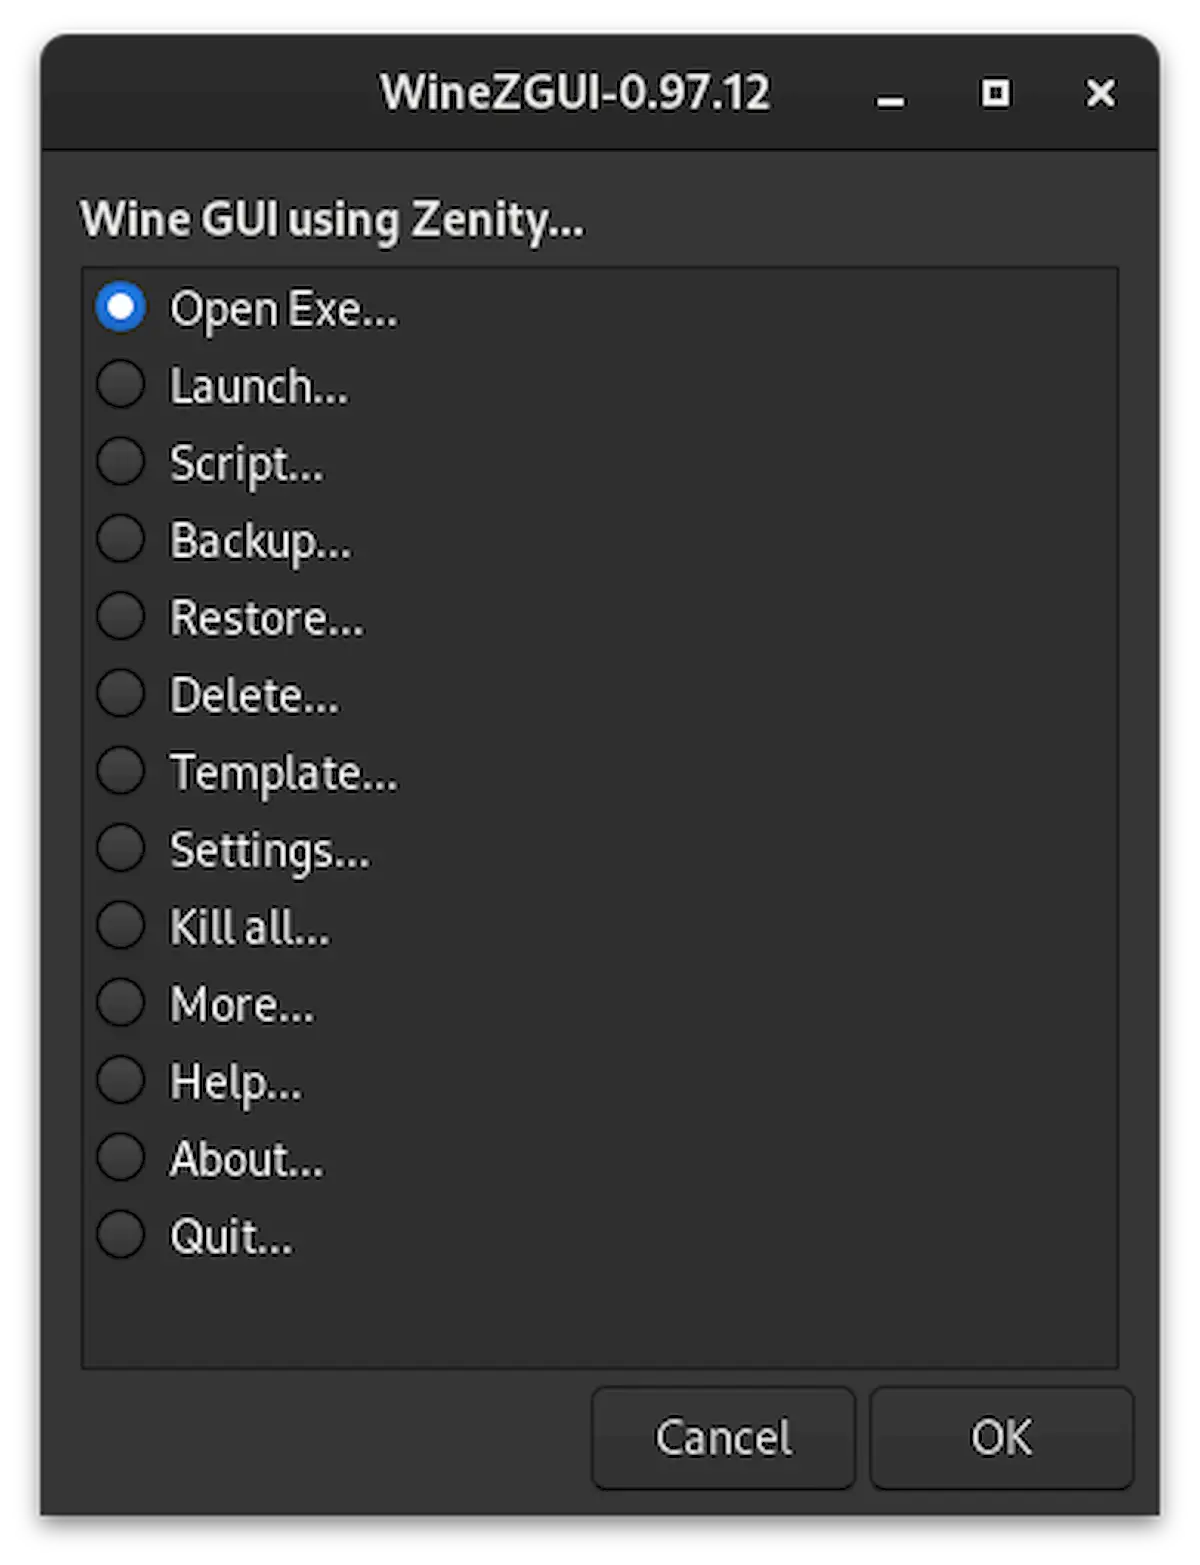 Como instalar a interface do Wine WineZGUI no Linux via Flatpak